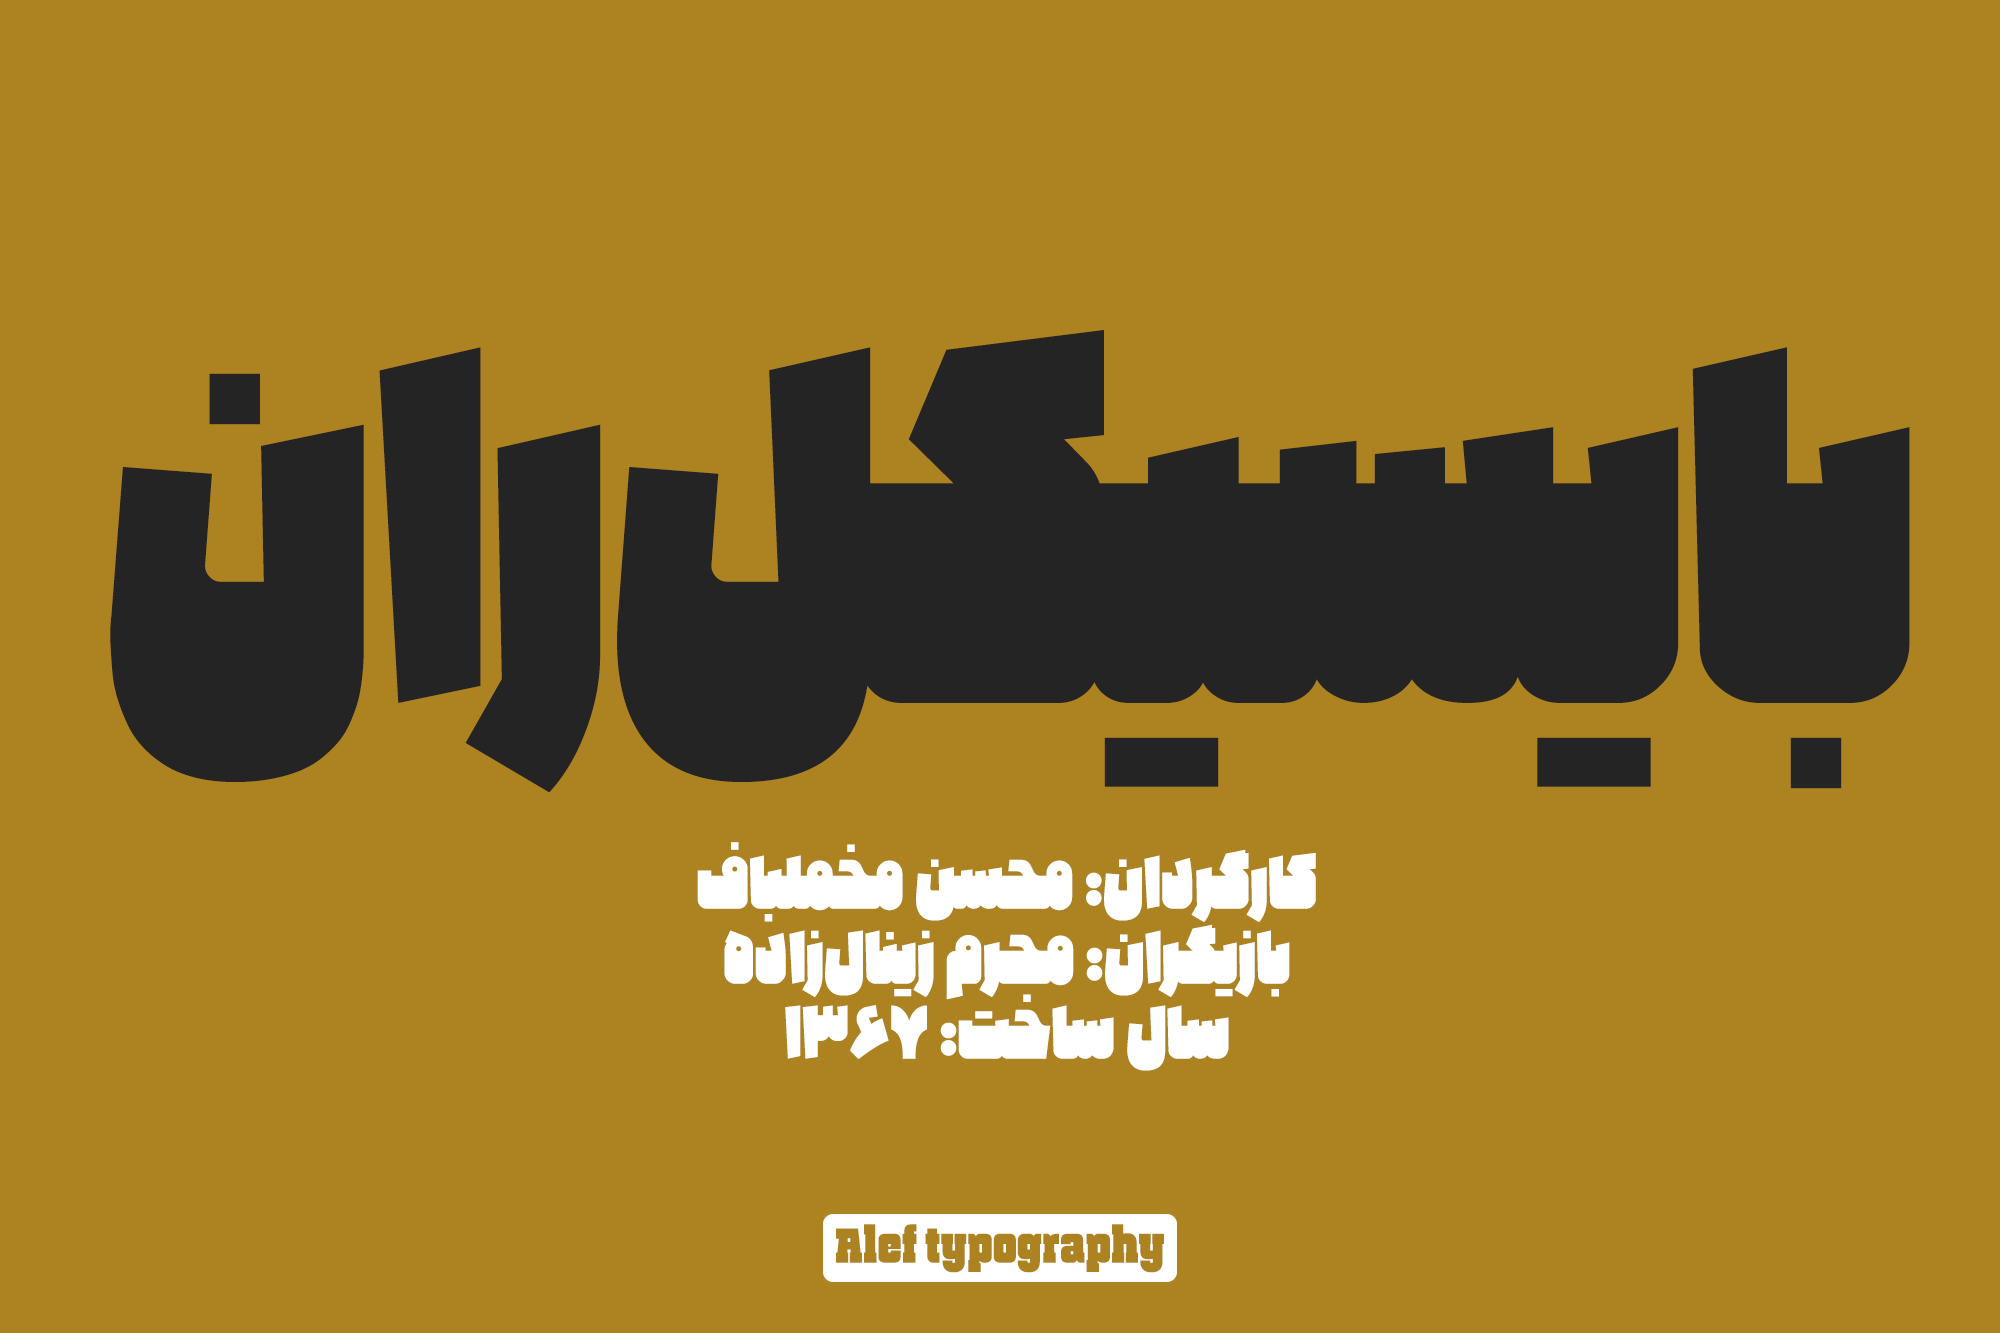 Alef-typography02